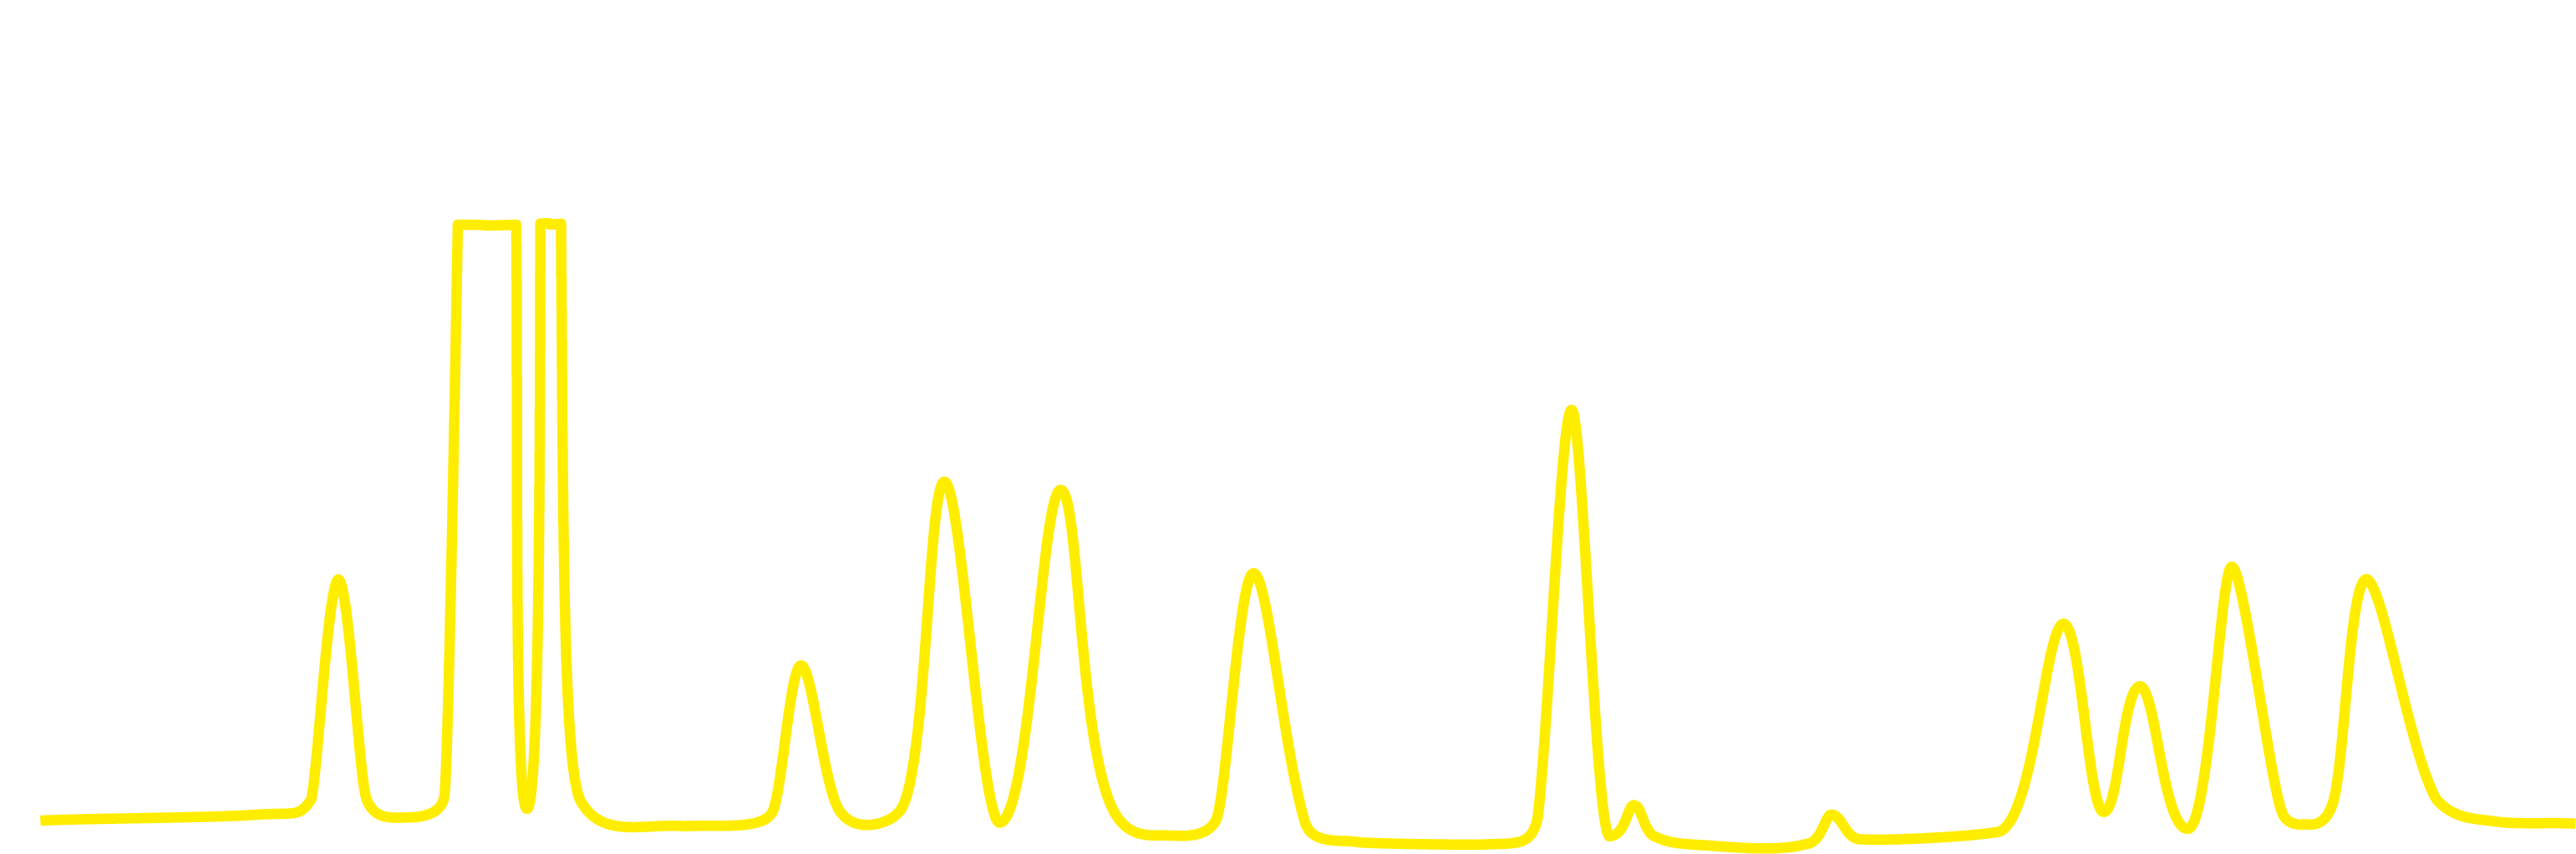 軽質炭化水素　測定例　H2 Air CH4 CO2 C2H4 C2H6 C2H2 NH3 H2S CO
S C3H6/C3H8 C3H4 CH2O H2O　測定グラフ